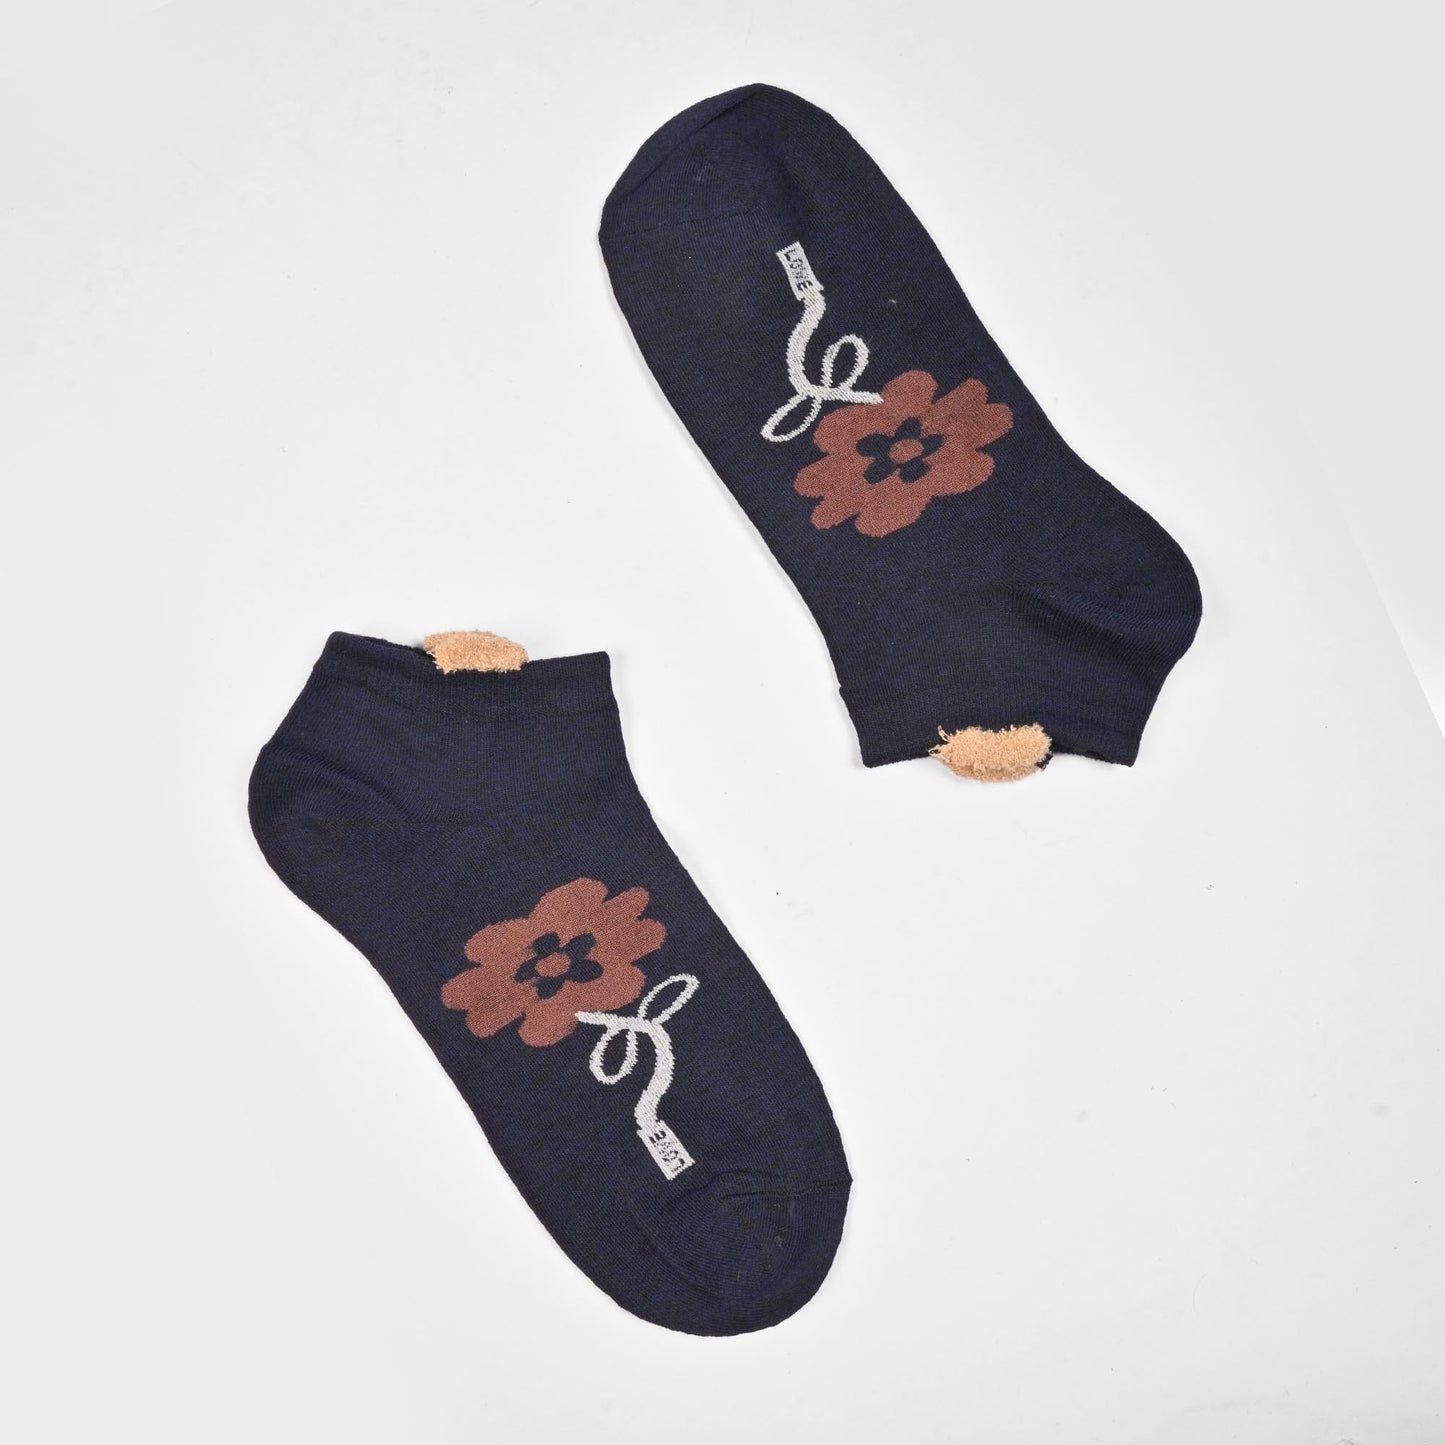 Fashion Women's Herstal Design Anklet Socks Socks SRL Navy D3 EUR 35-40